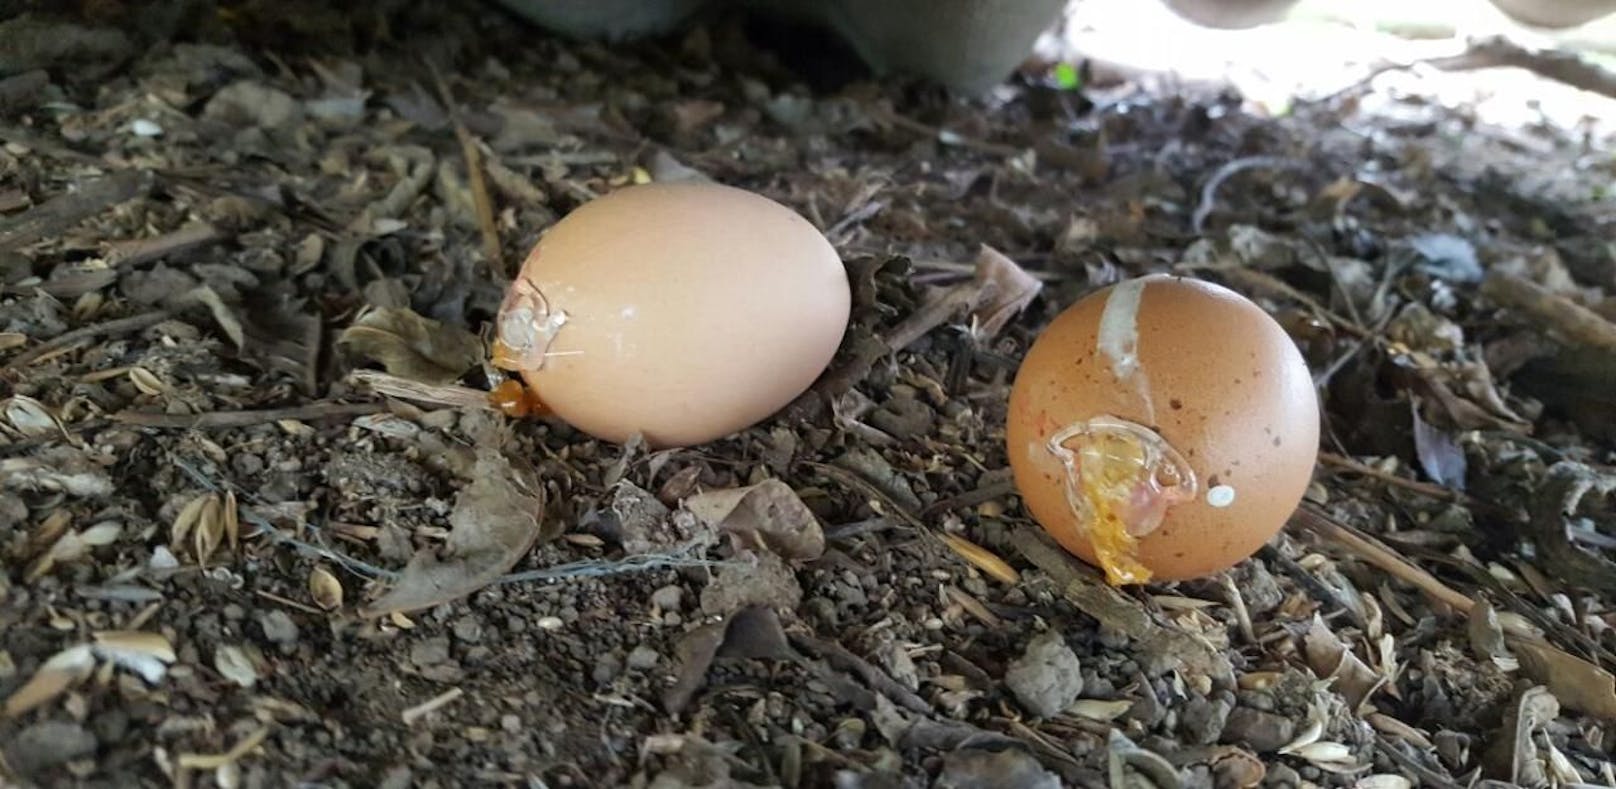 Diese beiden Eier wurden mit Gift gefüllt und mit Heißklebepistole wieder verschlossen.